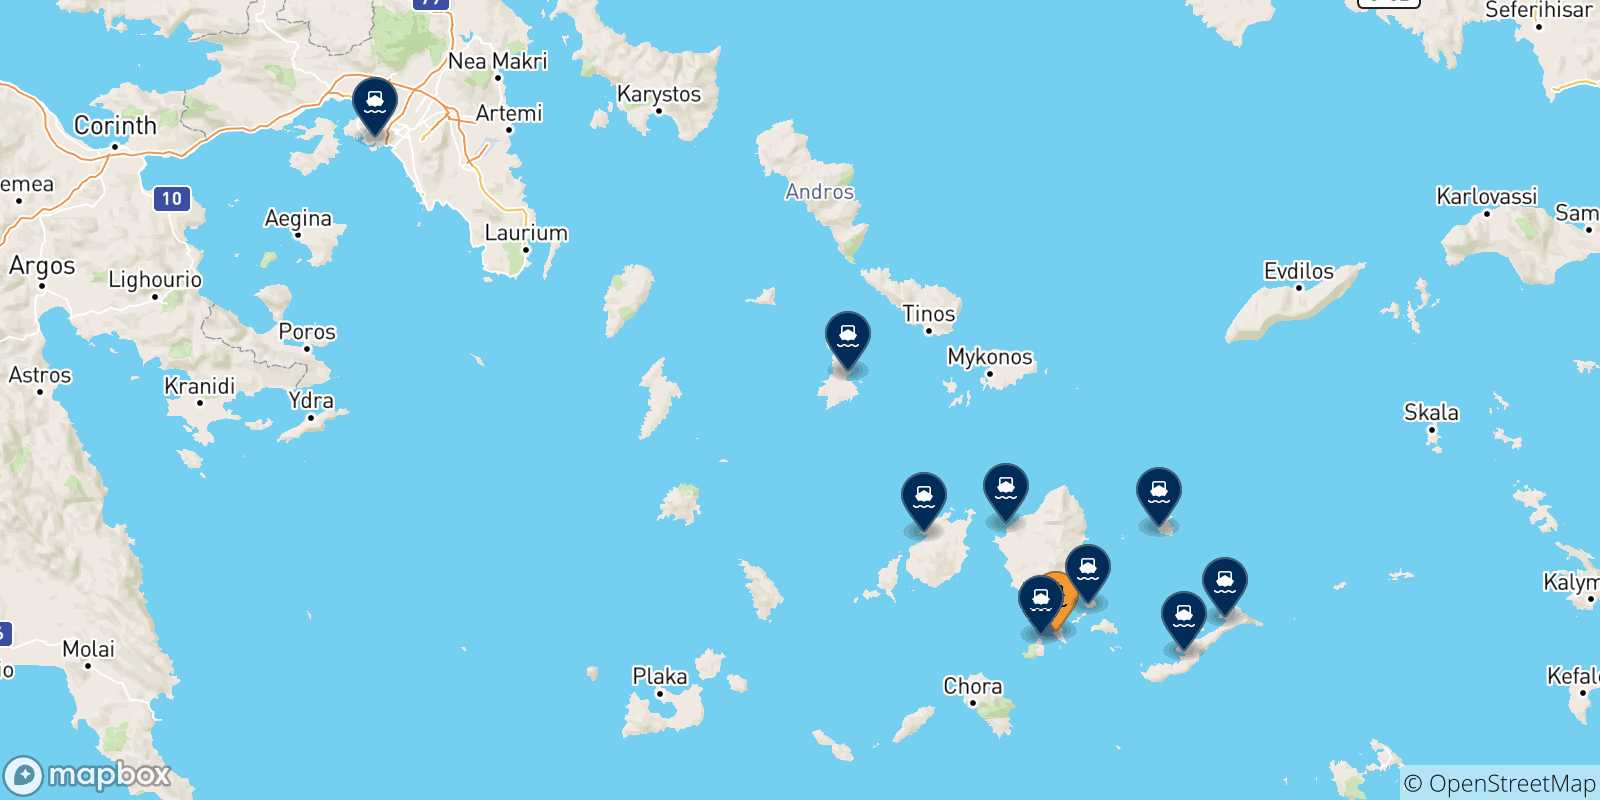 Mappa delle possibili rotte tra Schinoussa e la Grecia